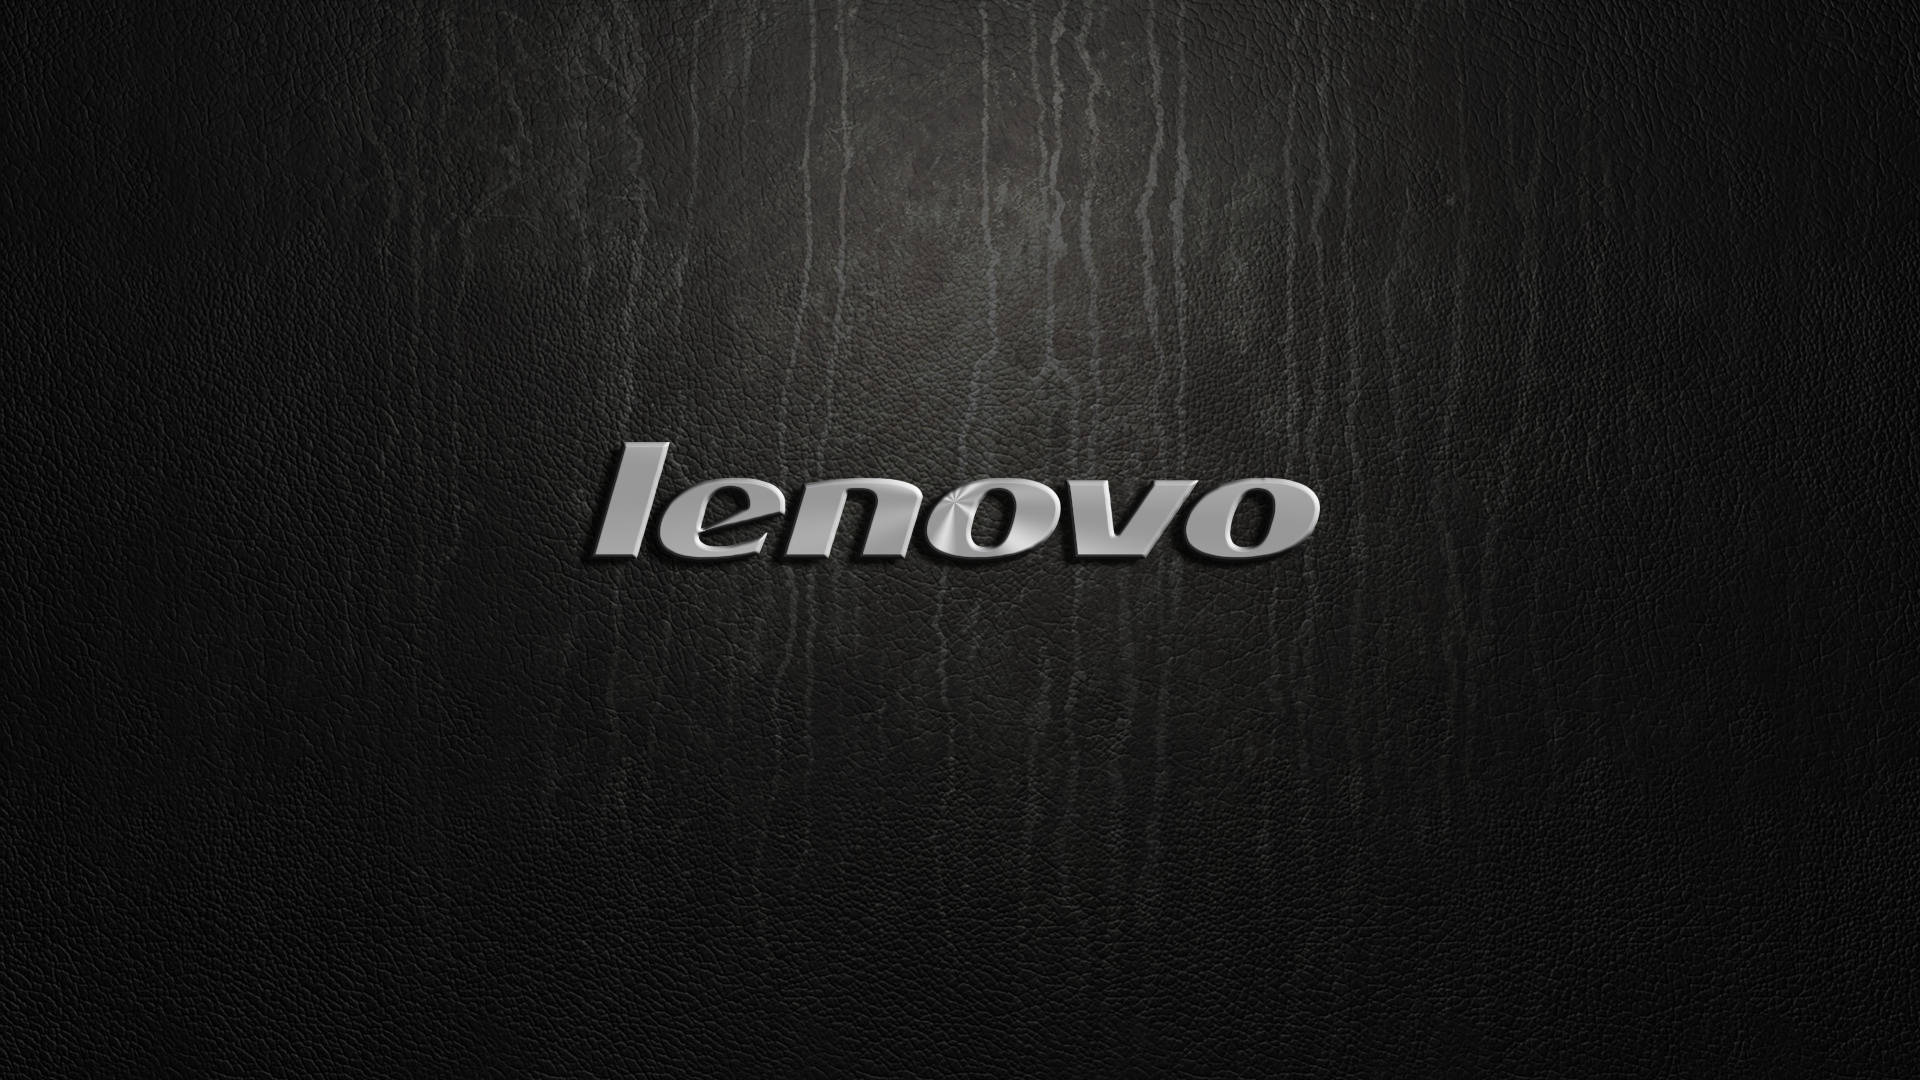 Logode Lenovo En Relieve Plateado Hd. Fondo de pantalla